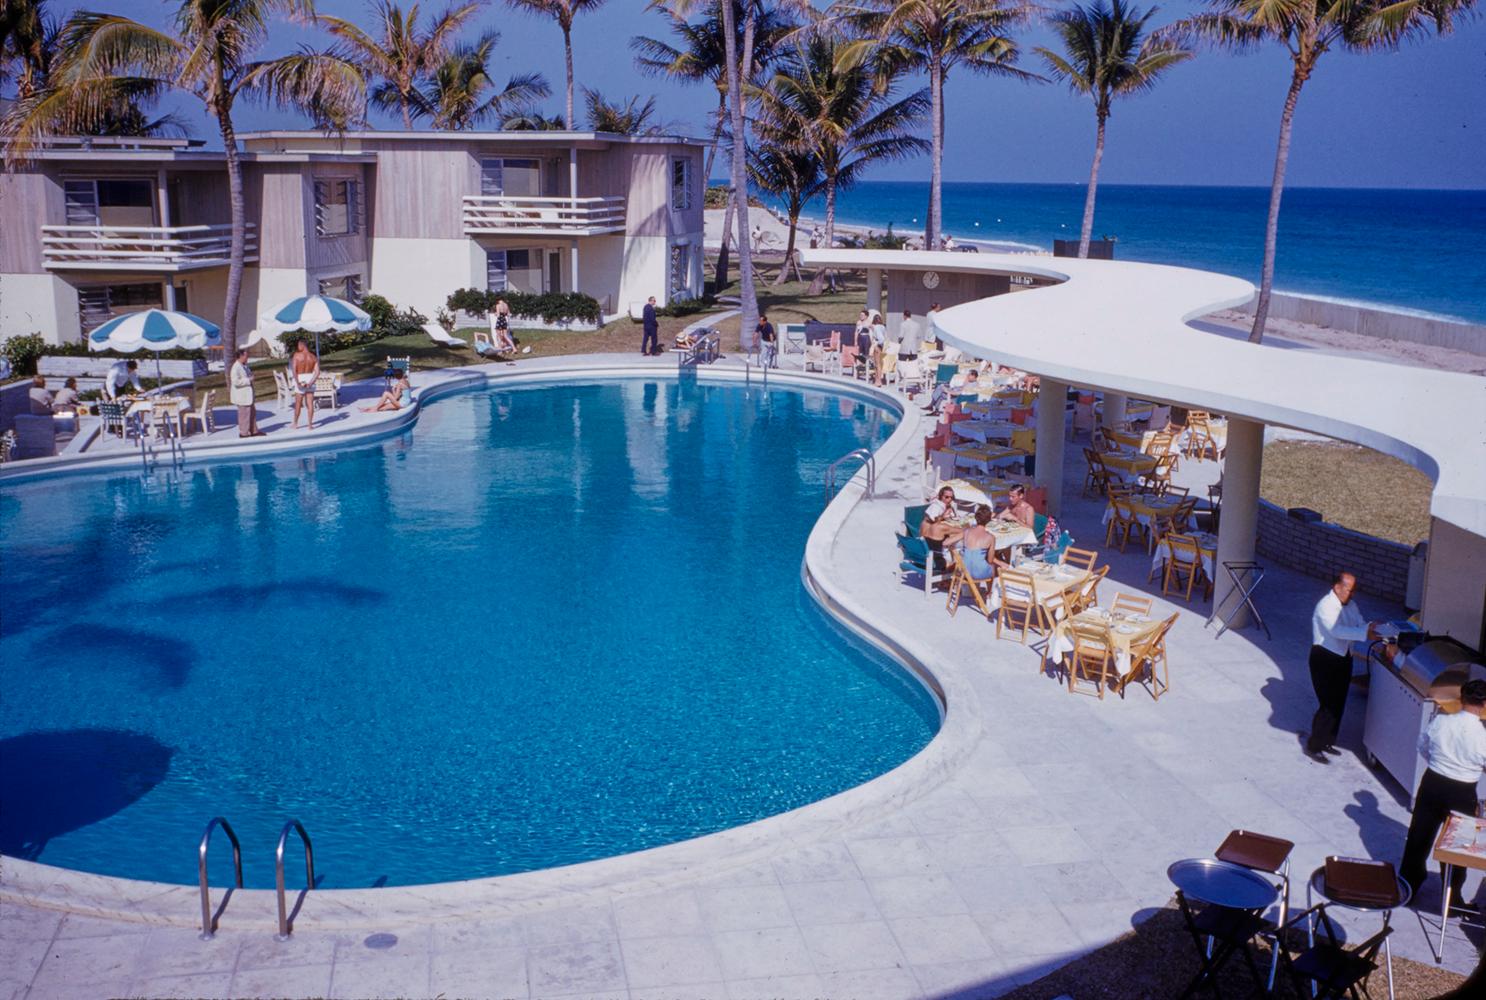 La Coquille Club, Floride 1954

Invités à la piscine du La Coquille Club, Floride, en décembre 1954

par Toni Frissell

40 x 30" pouces / 101 x 76 cm format du papier 
Impression au pigment d'archivage
non encadré 
(possibilité d'encadrement - voir